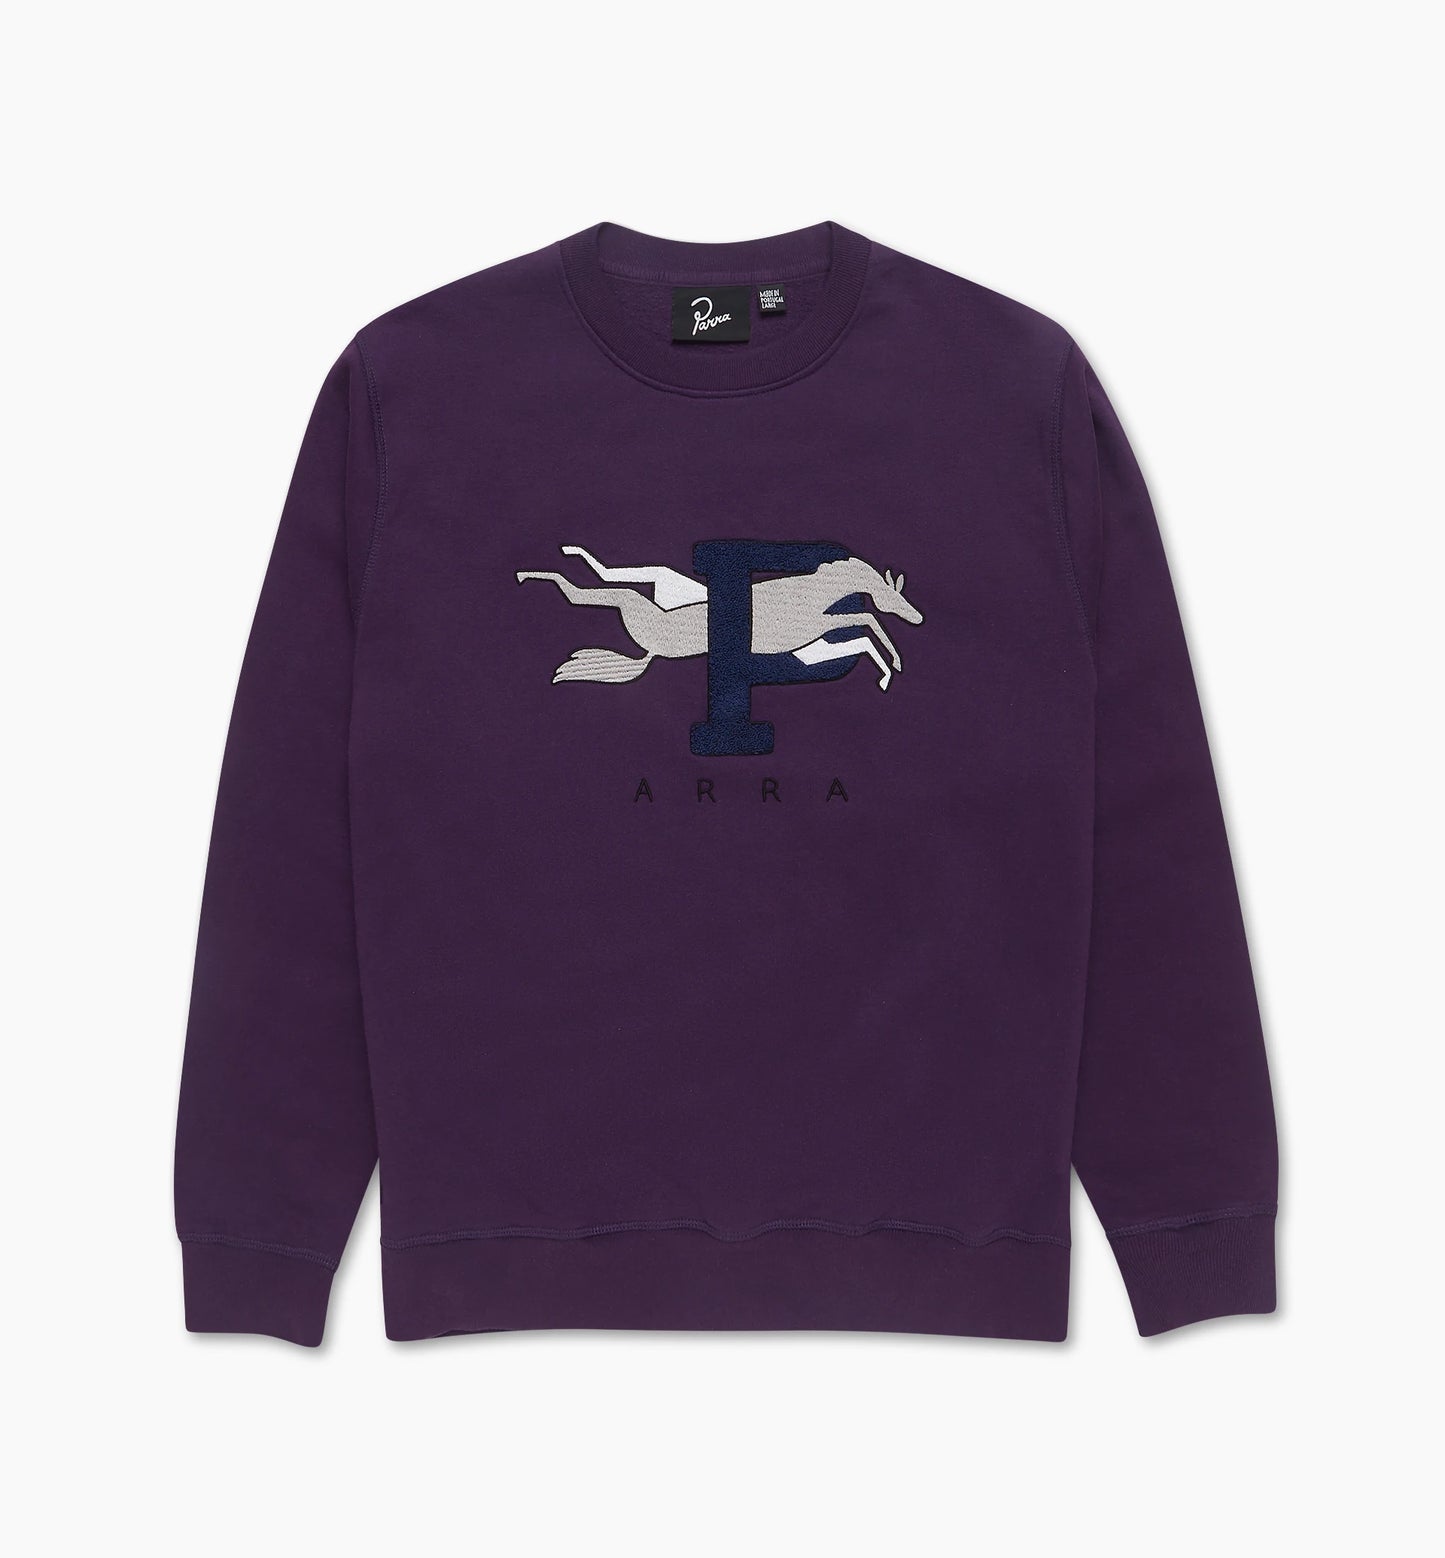 By Parra Horse P Crewneck Sweater Purple